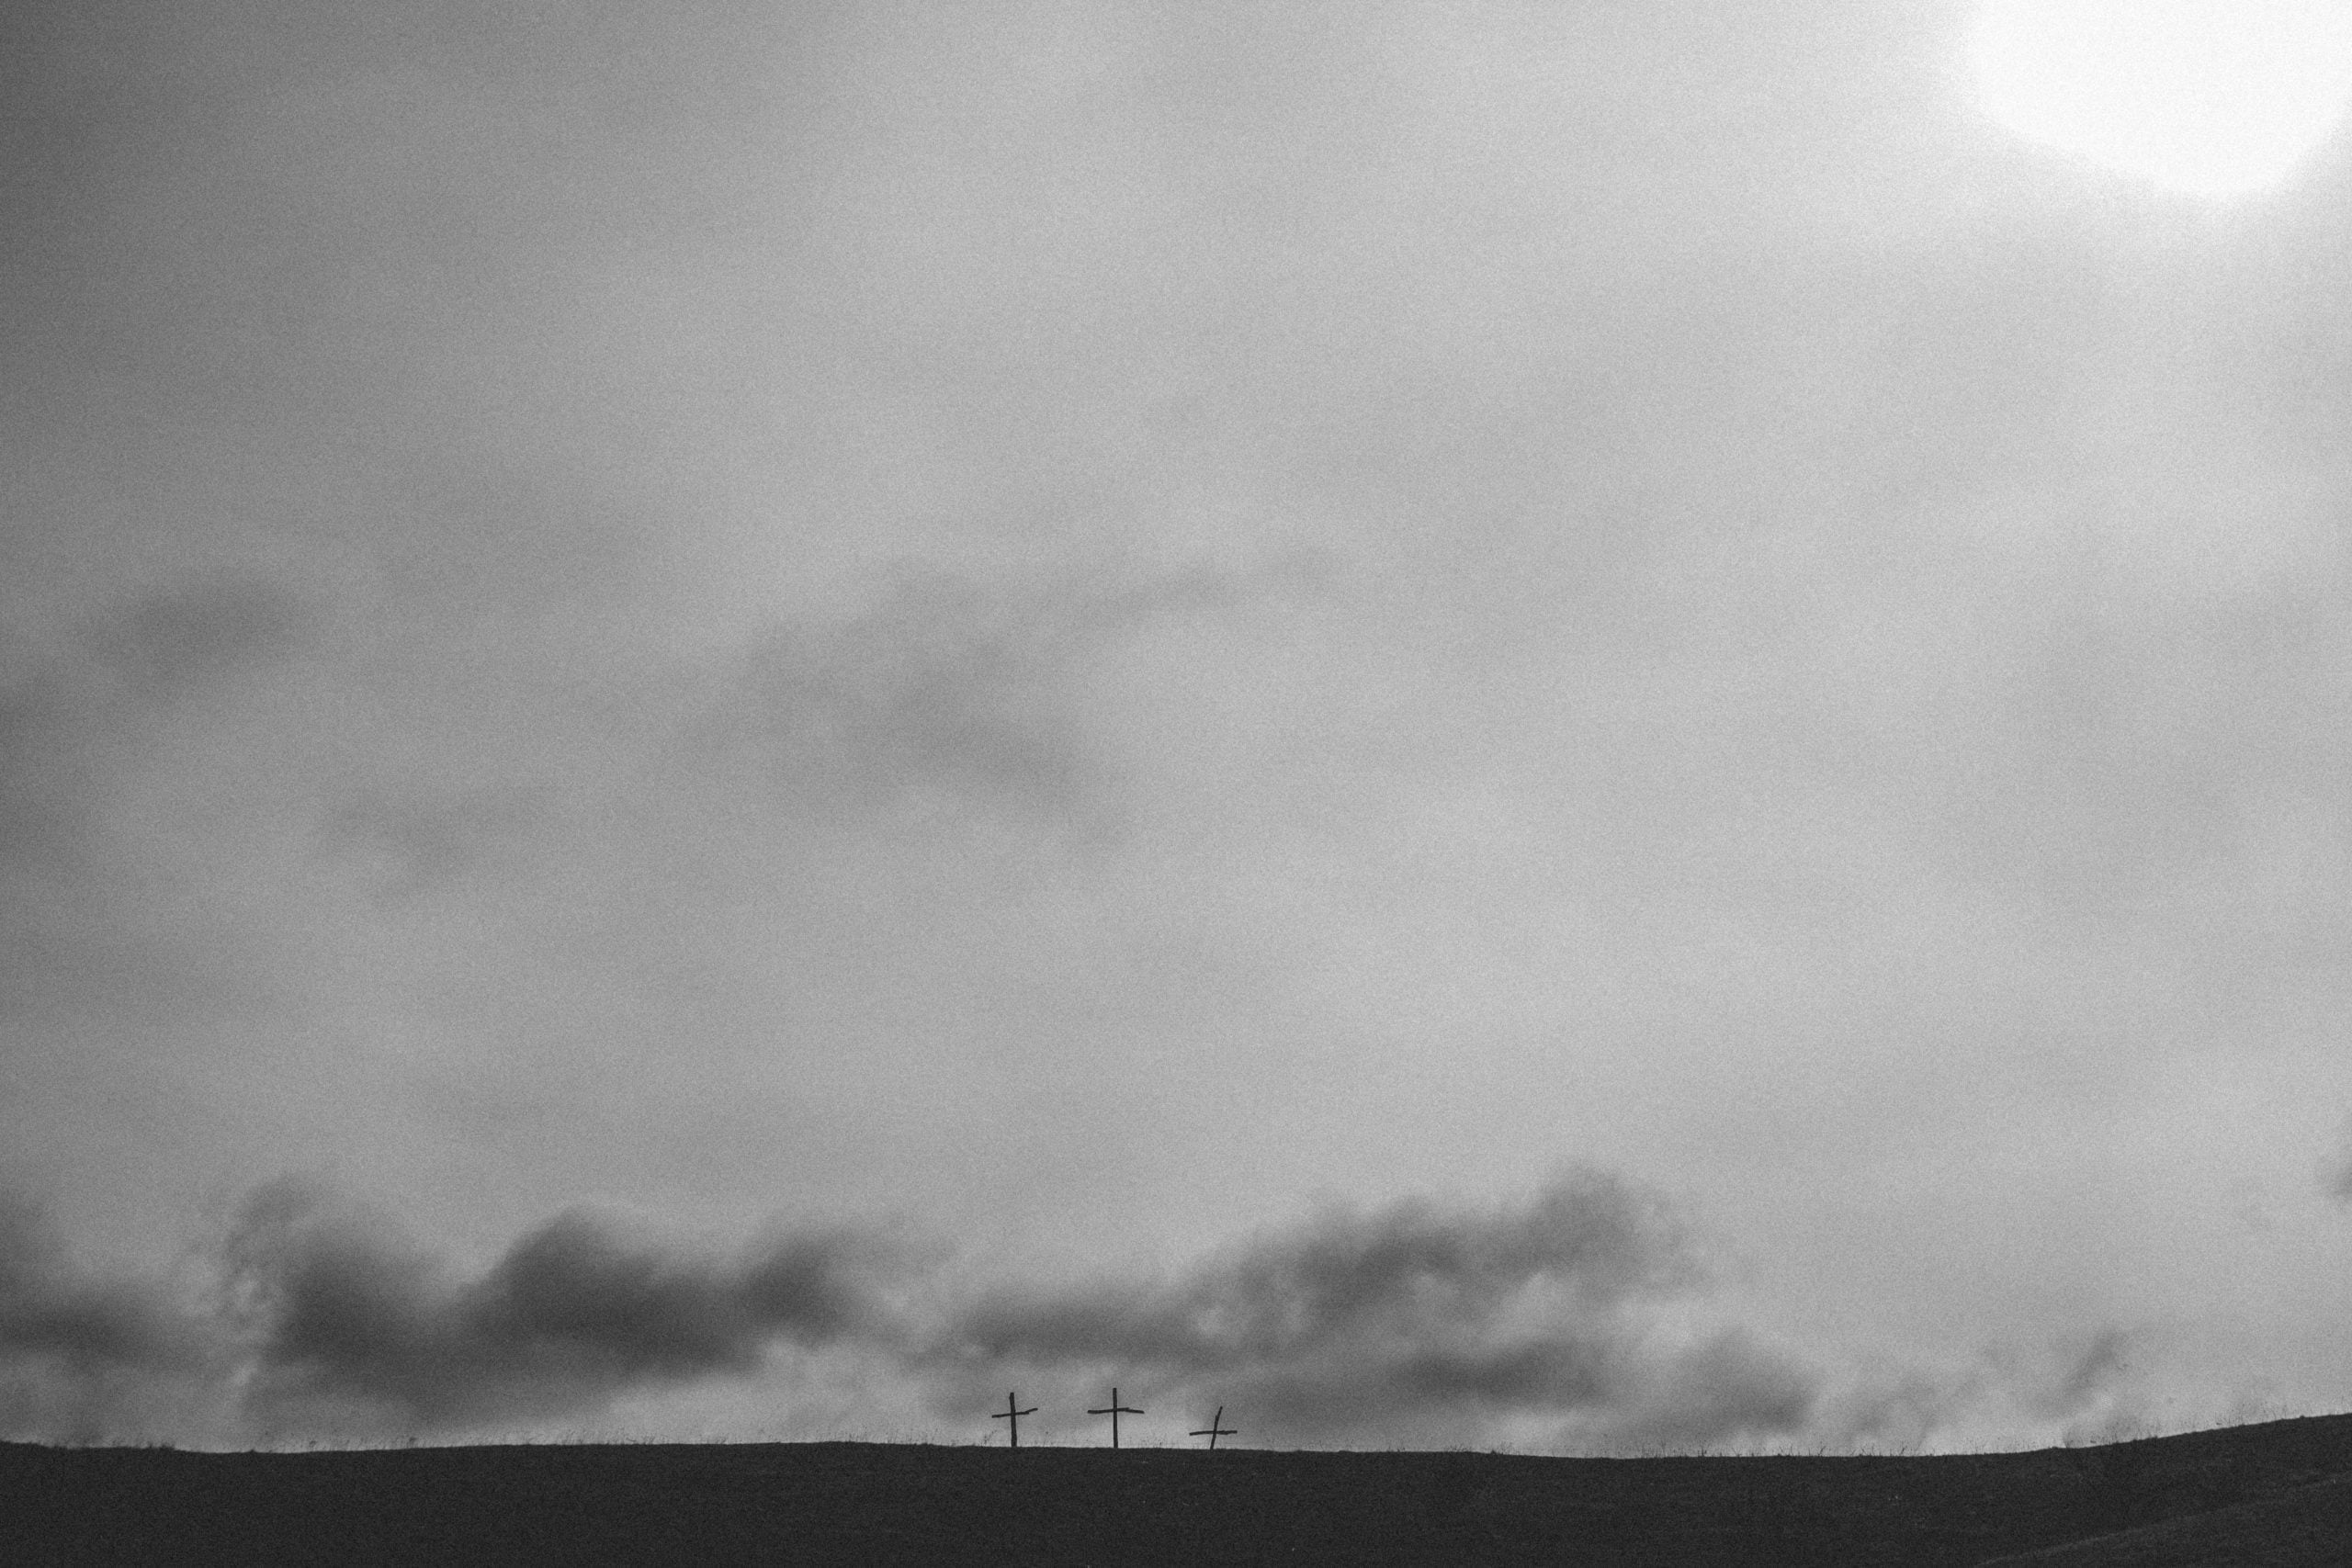 overcast skies, three crosses